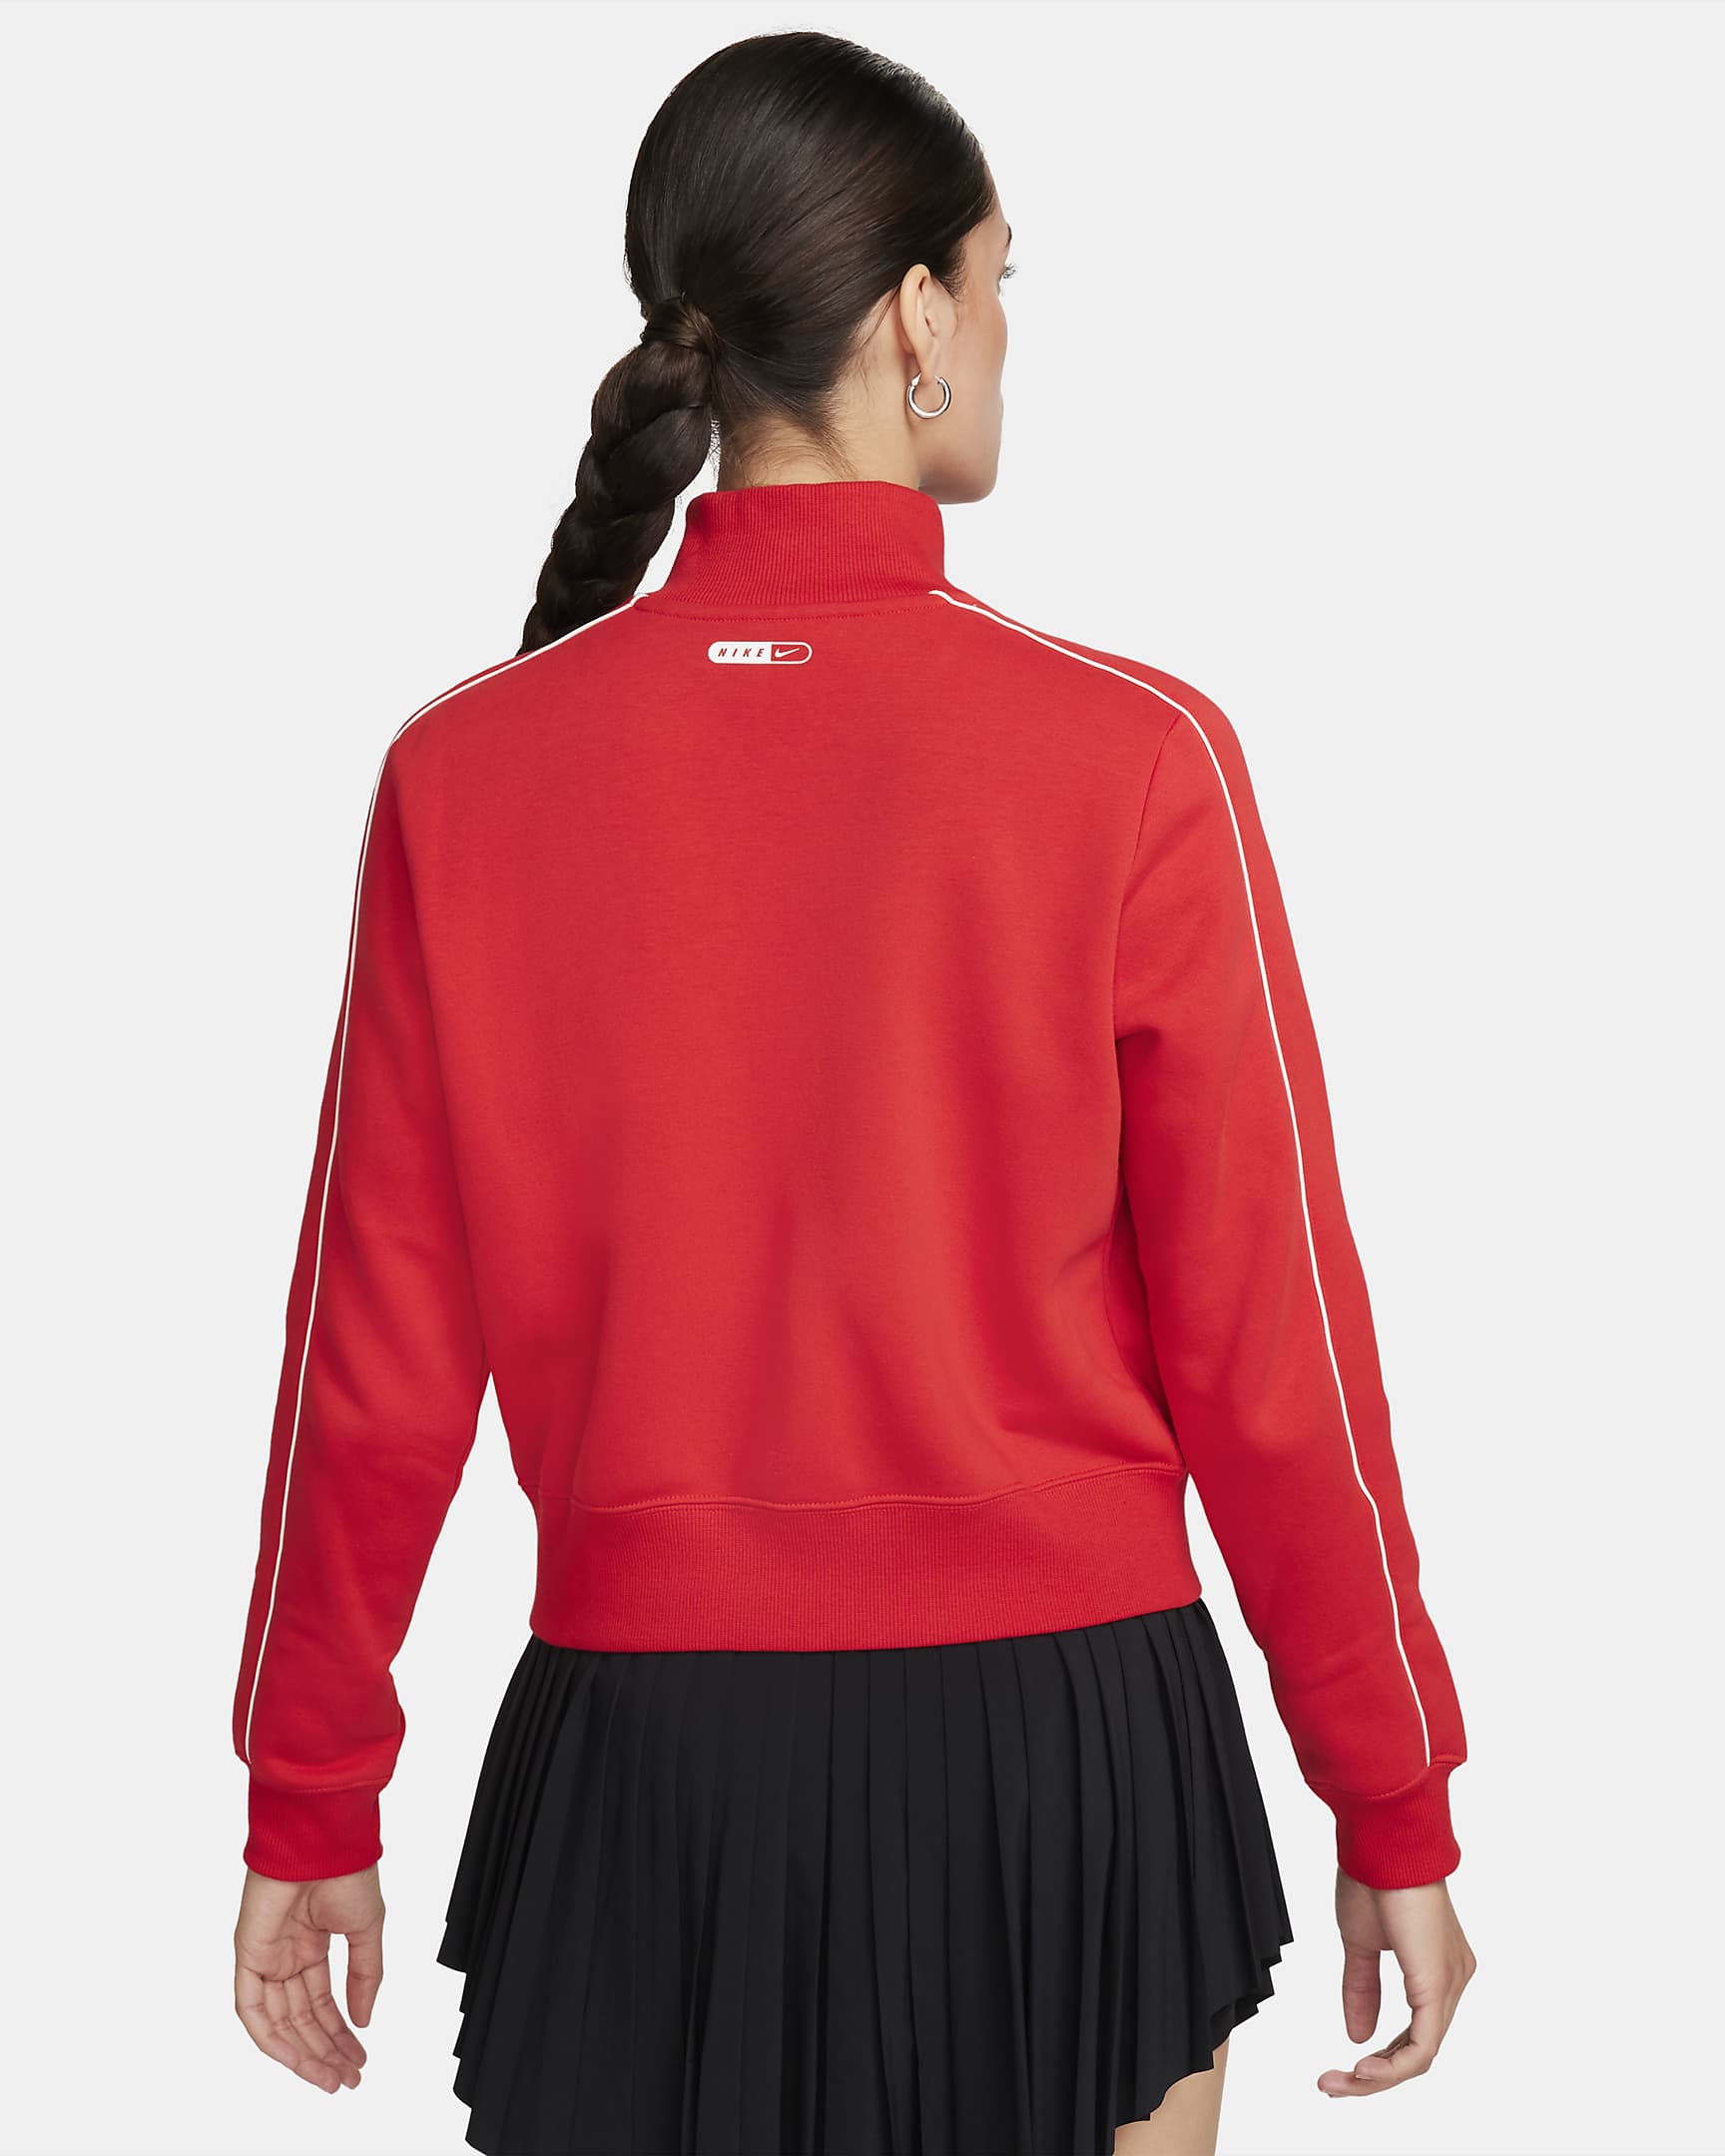 Nike Sportswear Women's Fleece Tracksuit Top. Nike LU